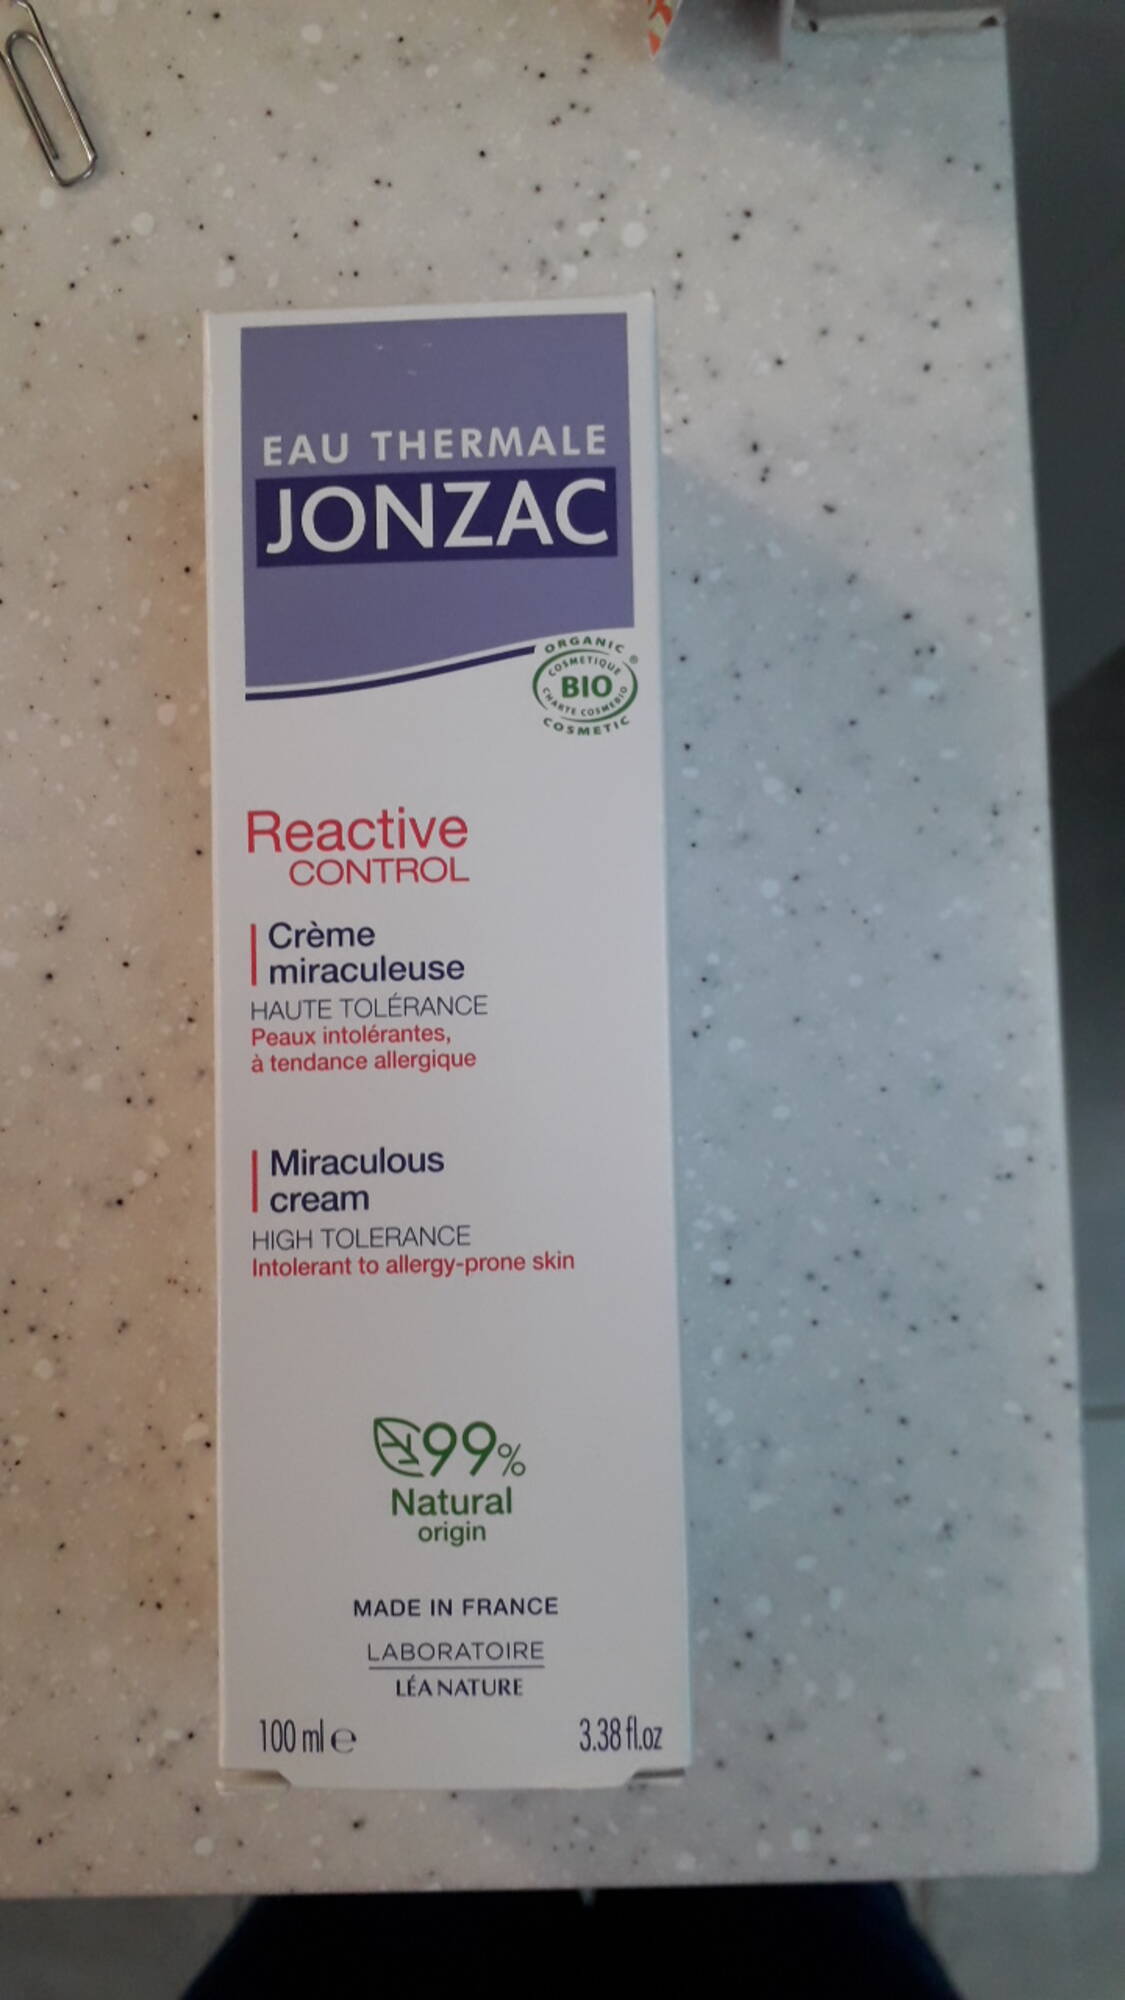 EAU THERMALE JONZAC - Reactive control - Crème miraculeuse 